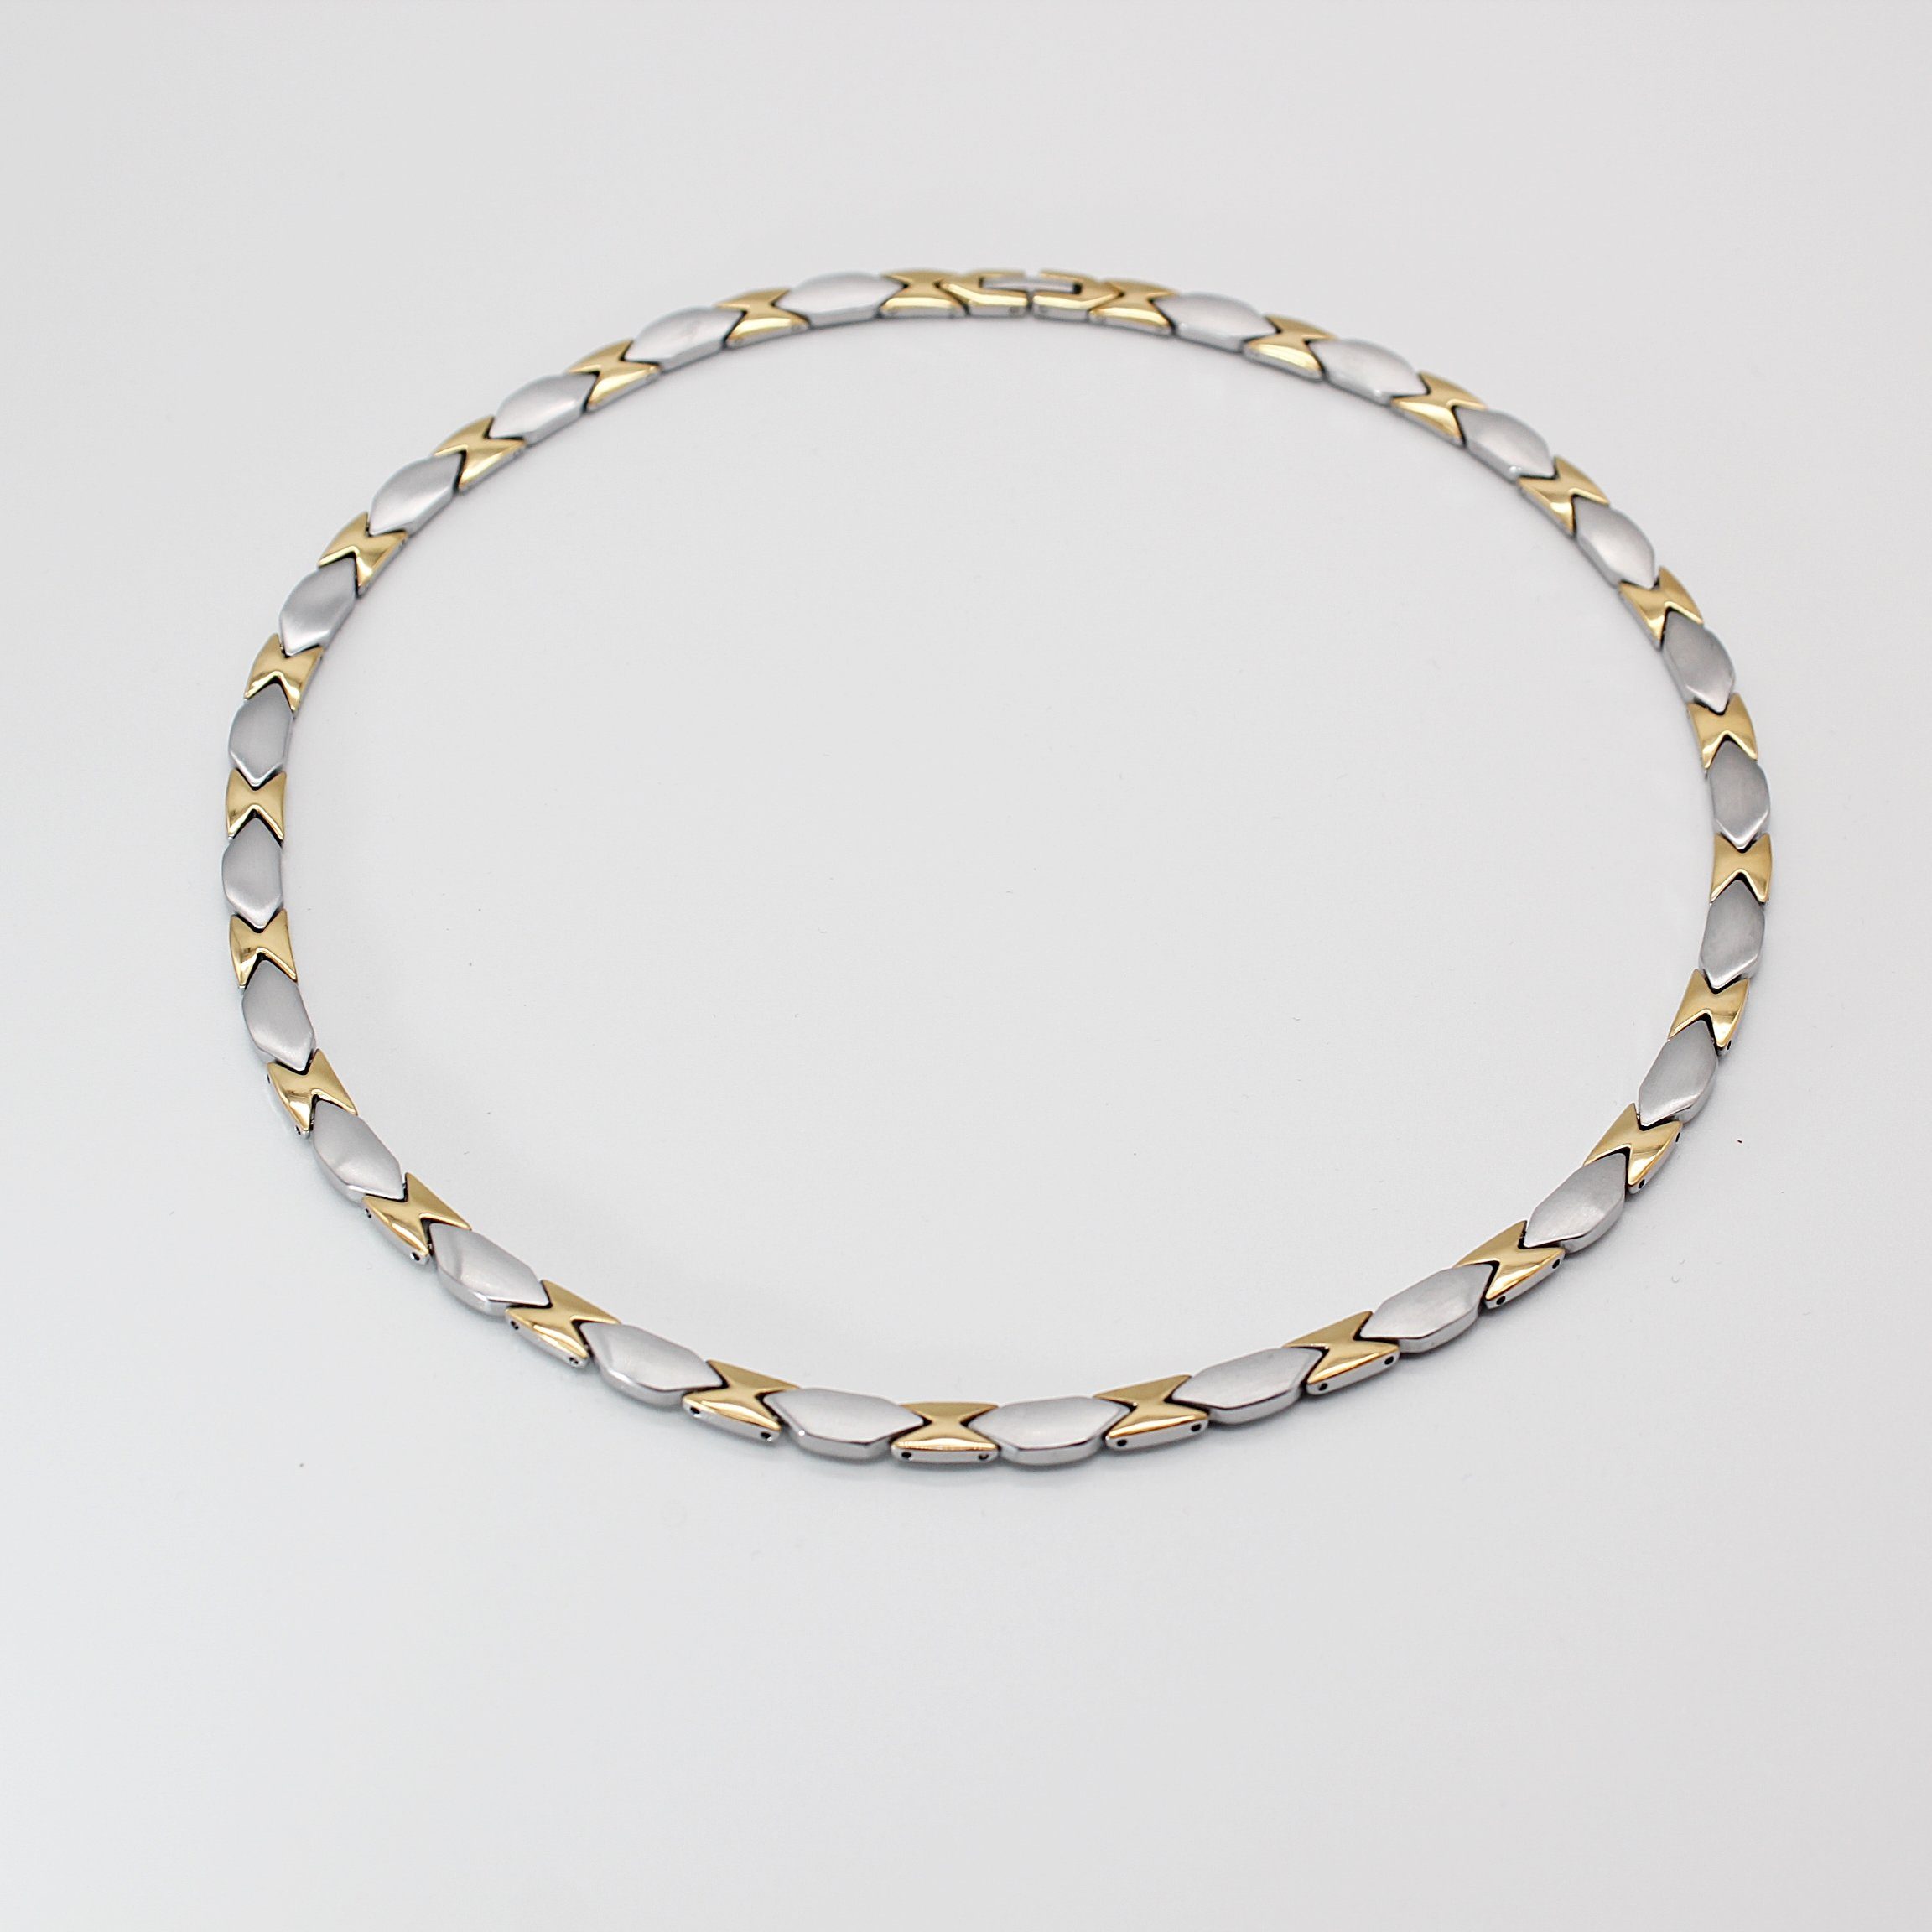 ELLAWIL Edelstahlkette Halskette / Collier Damenkette Collierkette Gliederkette Magnet-Kette (silber-goldfarbener Edelstahl, Kettenlänge 48 cm, Breite 6 mm), inklusive Geschenkschachtel